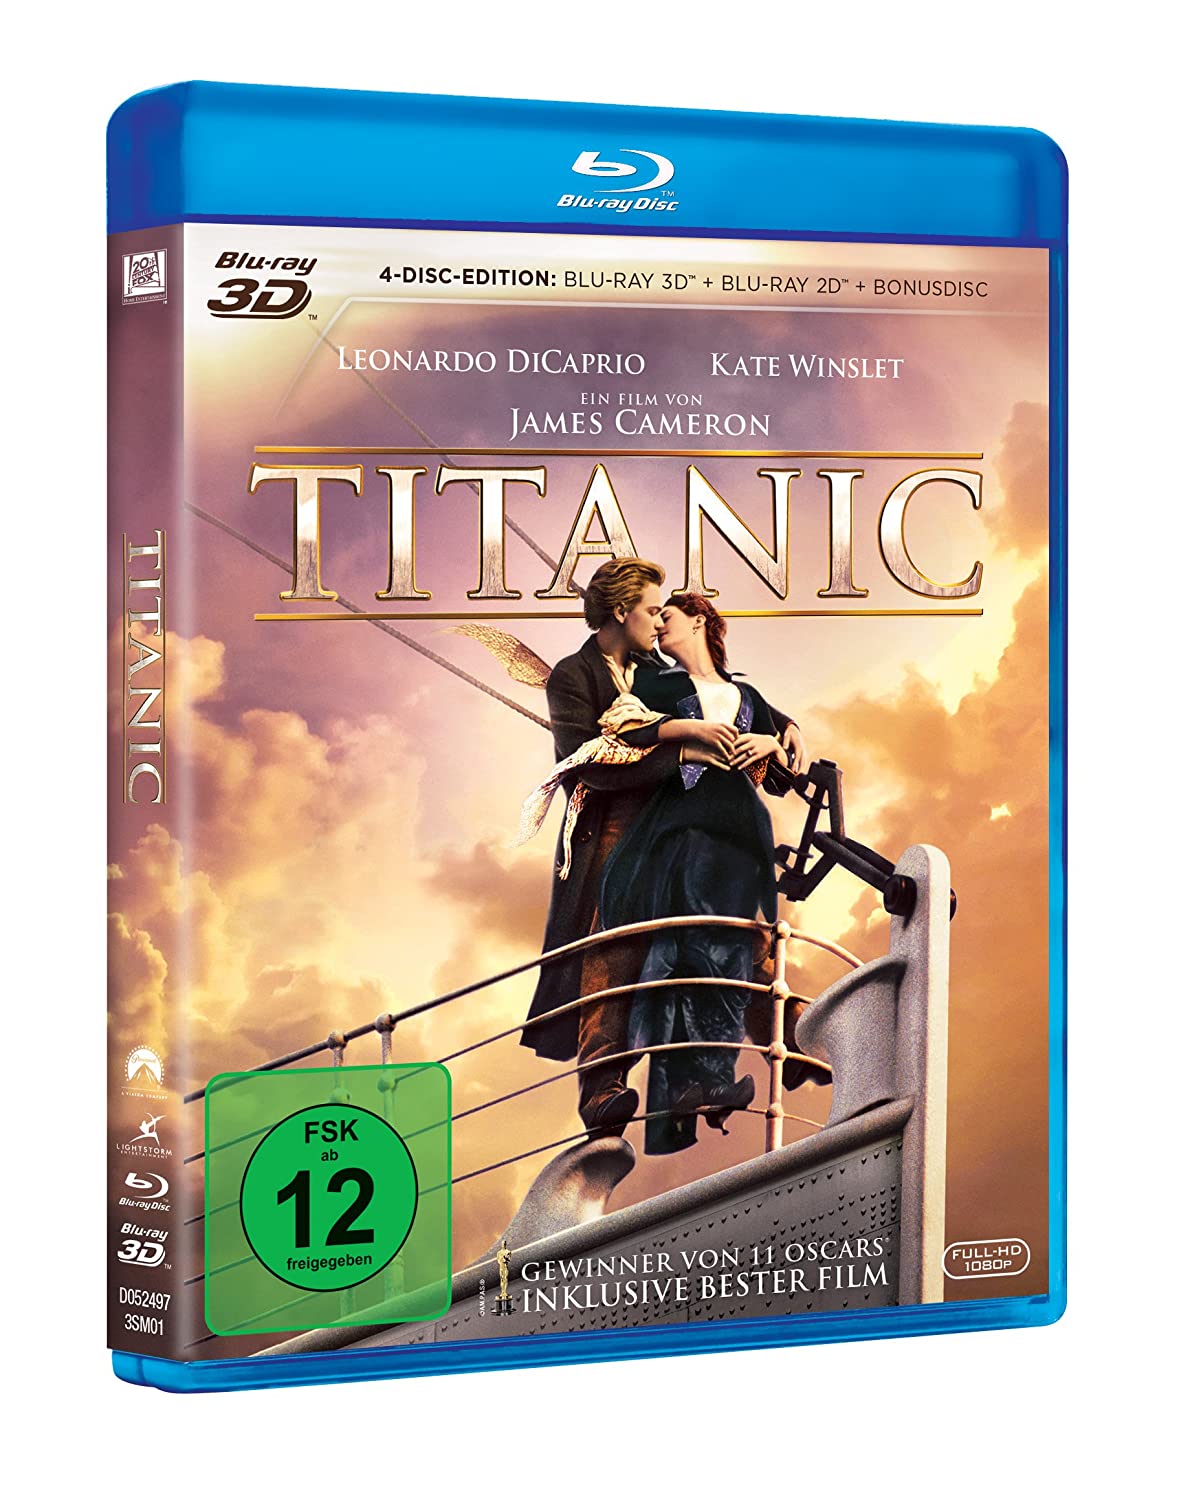 Titanic - 2 x Blu-ray 3D + Blu-ray 2D + Bonus Disc